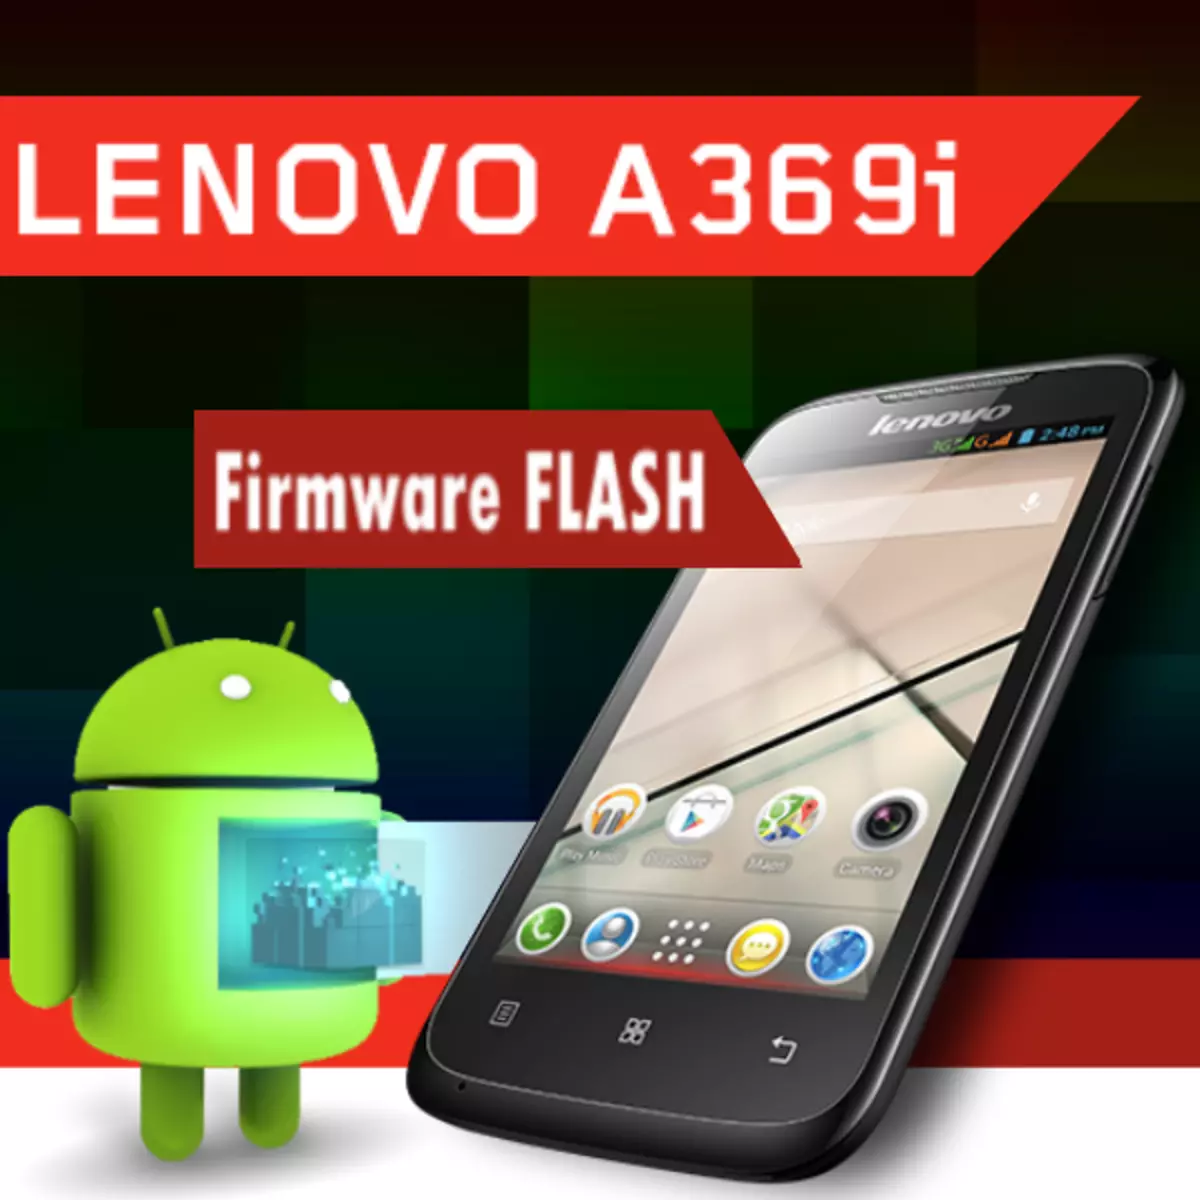 Firmware Lenovo ideelefon A369i